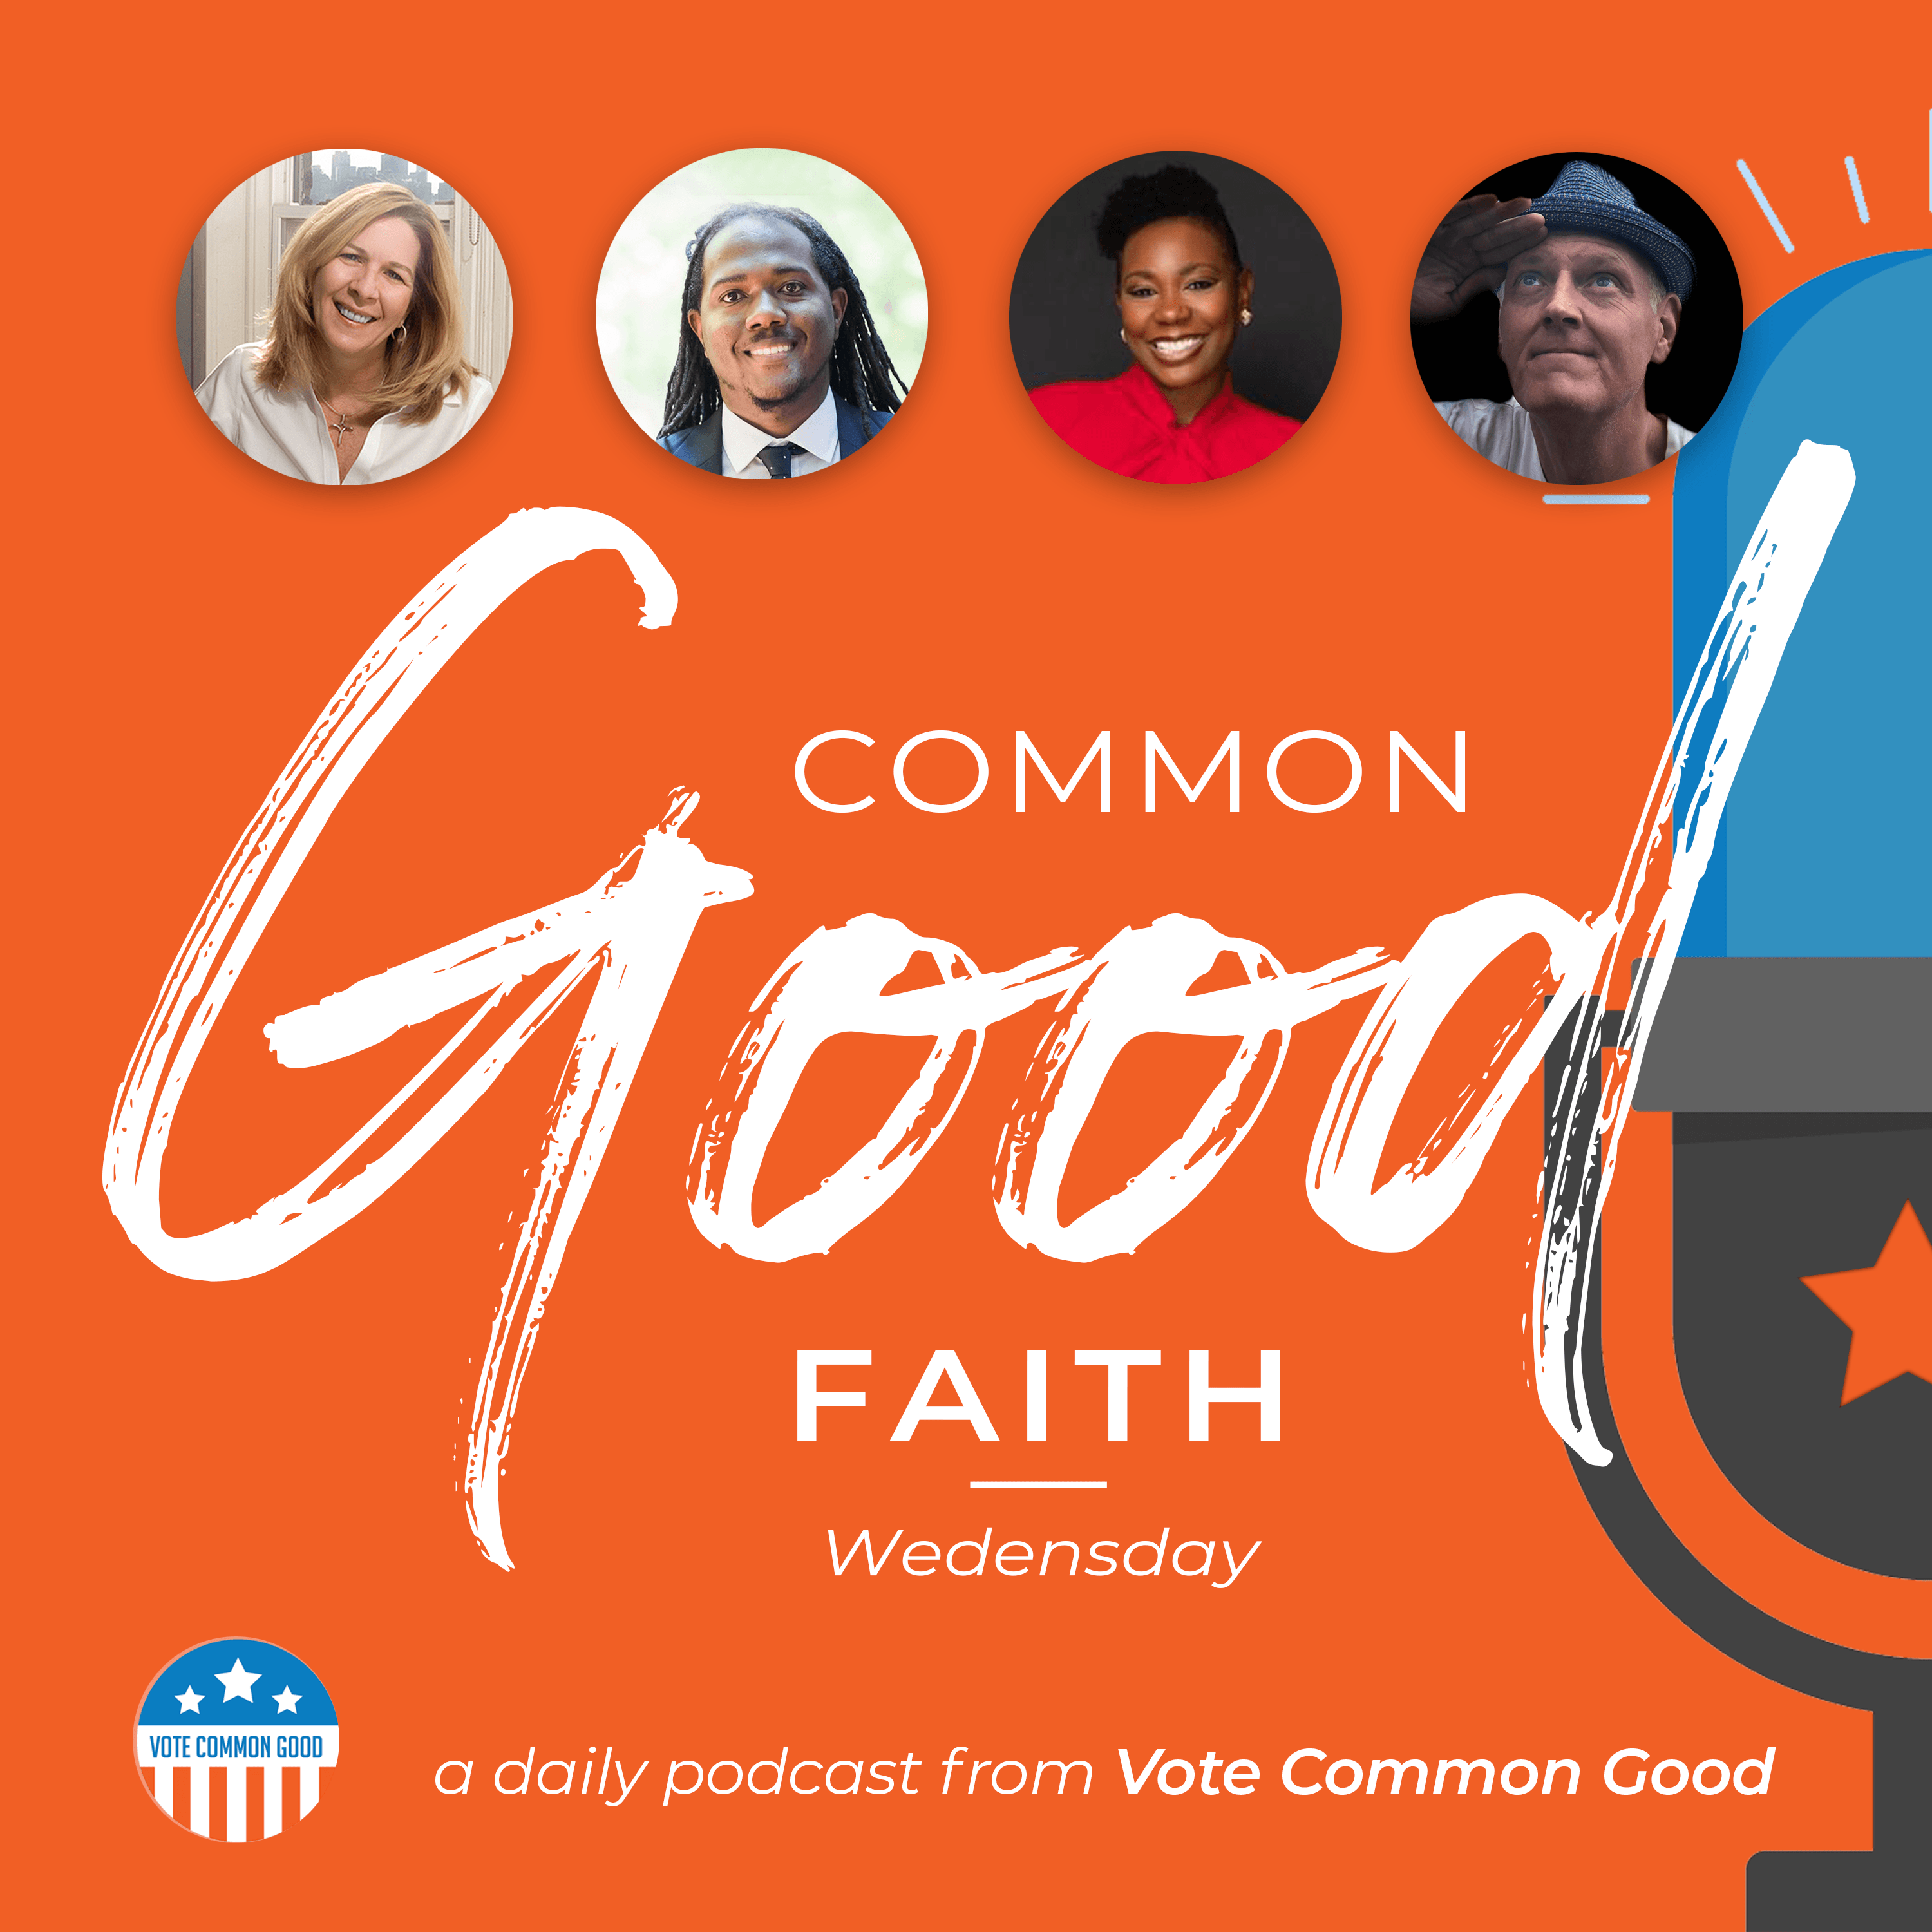 Common Good Faith - Women and the Church